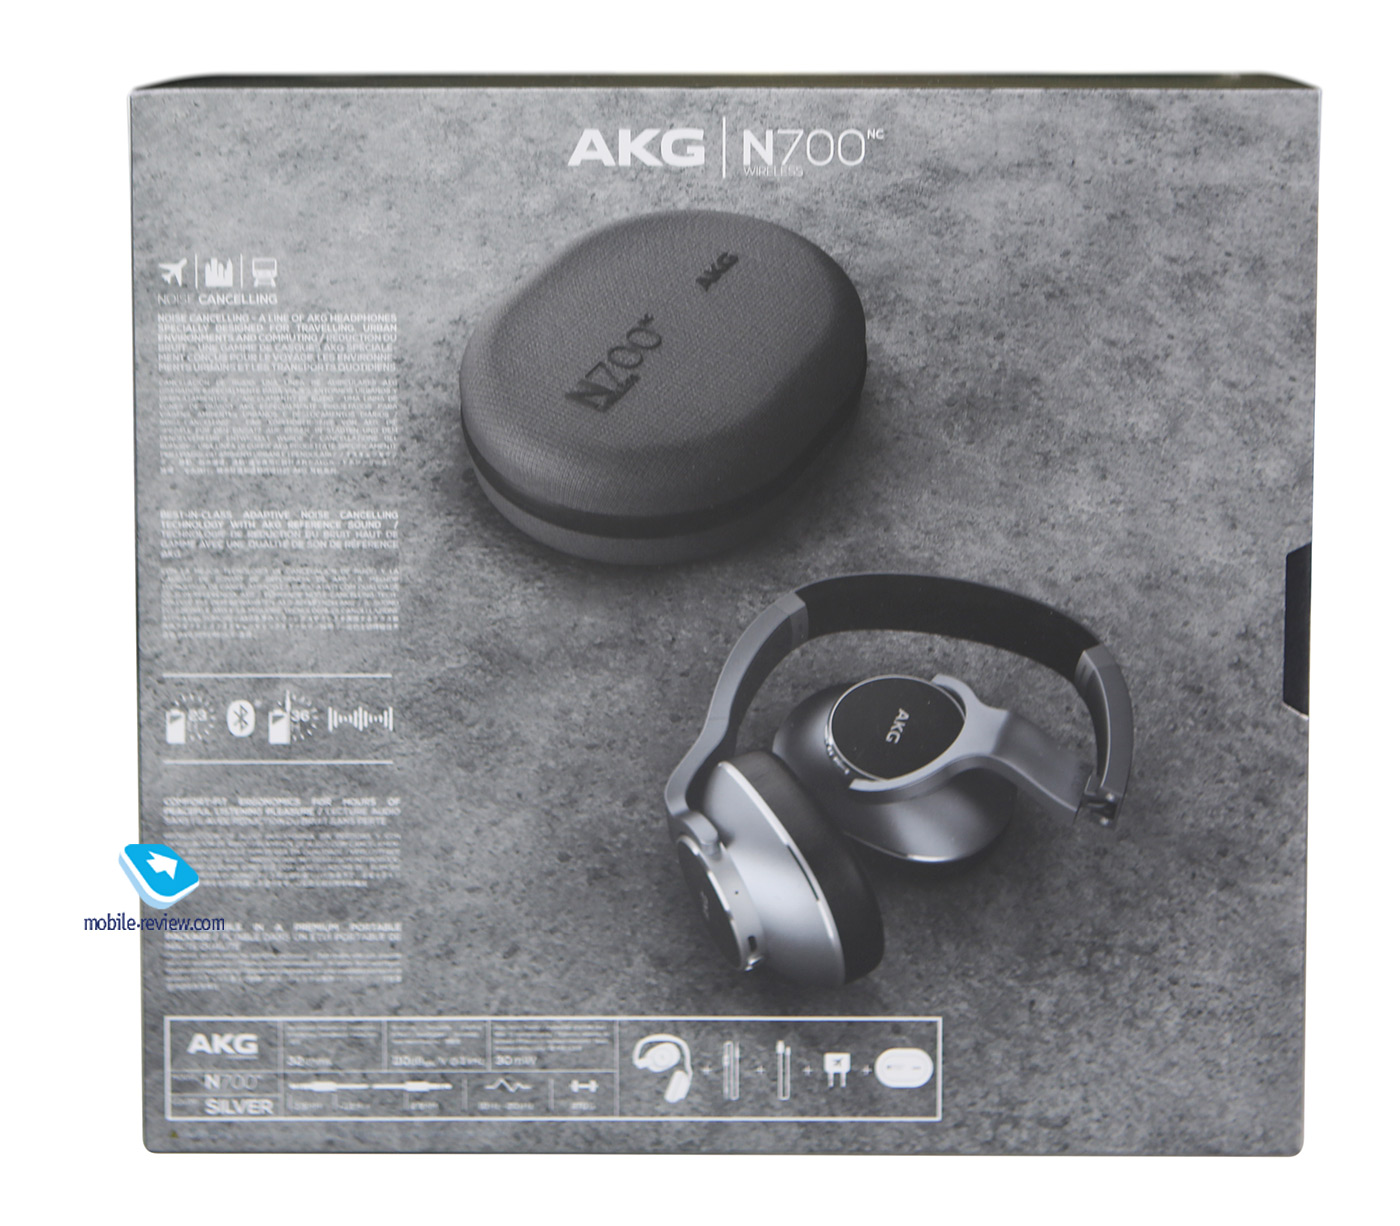    AKG N700nc.   Sony WH-1000XM2/XM3